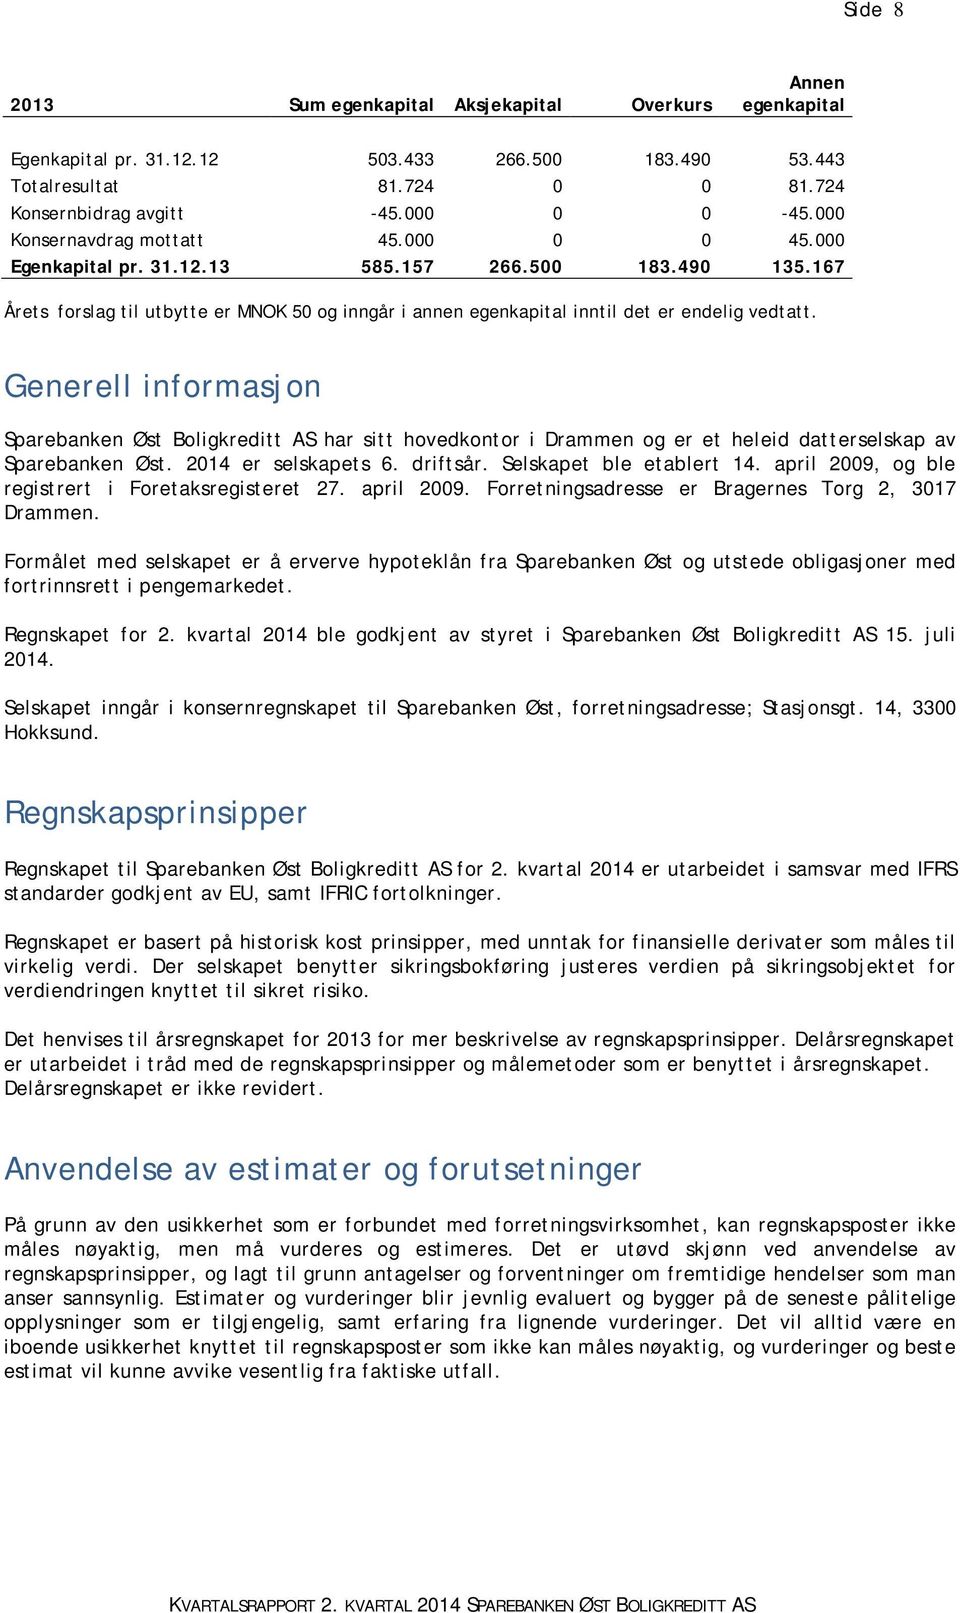 Generell informasjon Sparebanken Øst Boligkreditt AS har sitt hovedkontor i Drammen og er et heleid datterselskap av Sparebanken Øst. 2014 er selskapets 6. driftsår. Selskapet ble etablert 14.